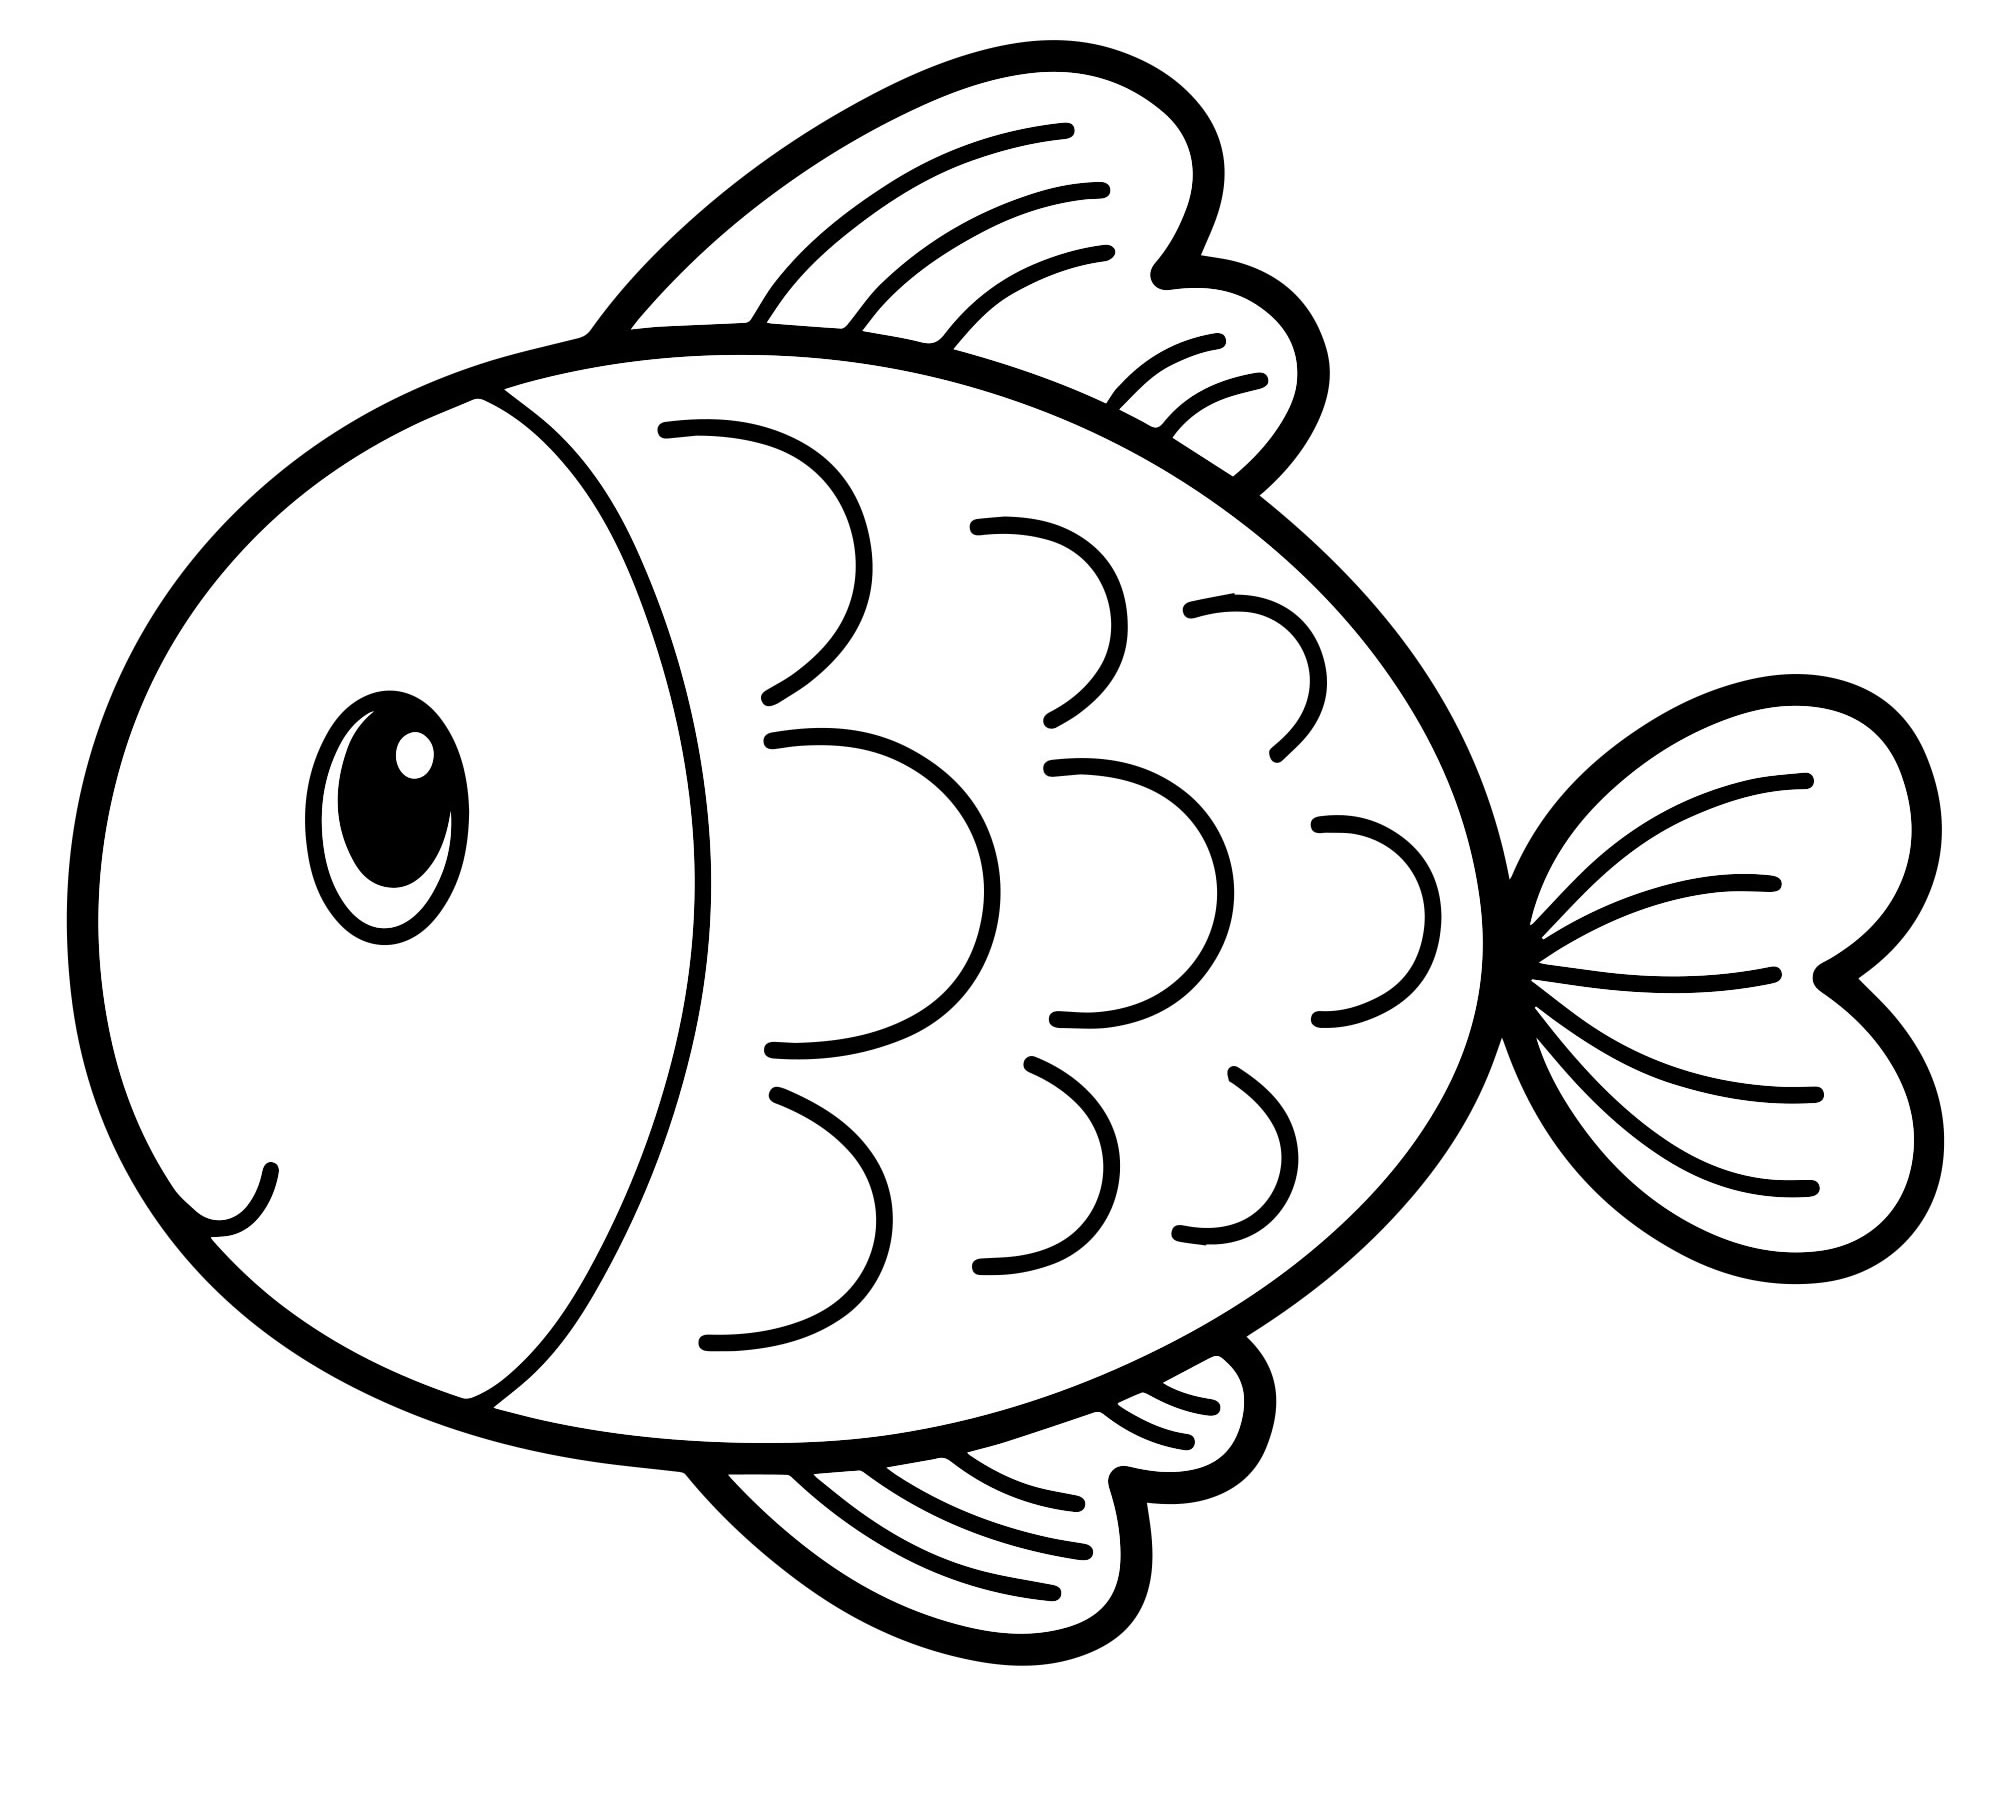 Картинка раскраска золотая рыбка